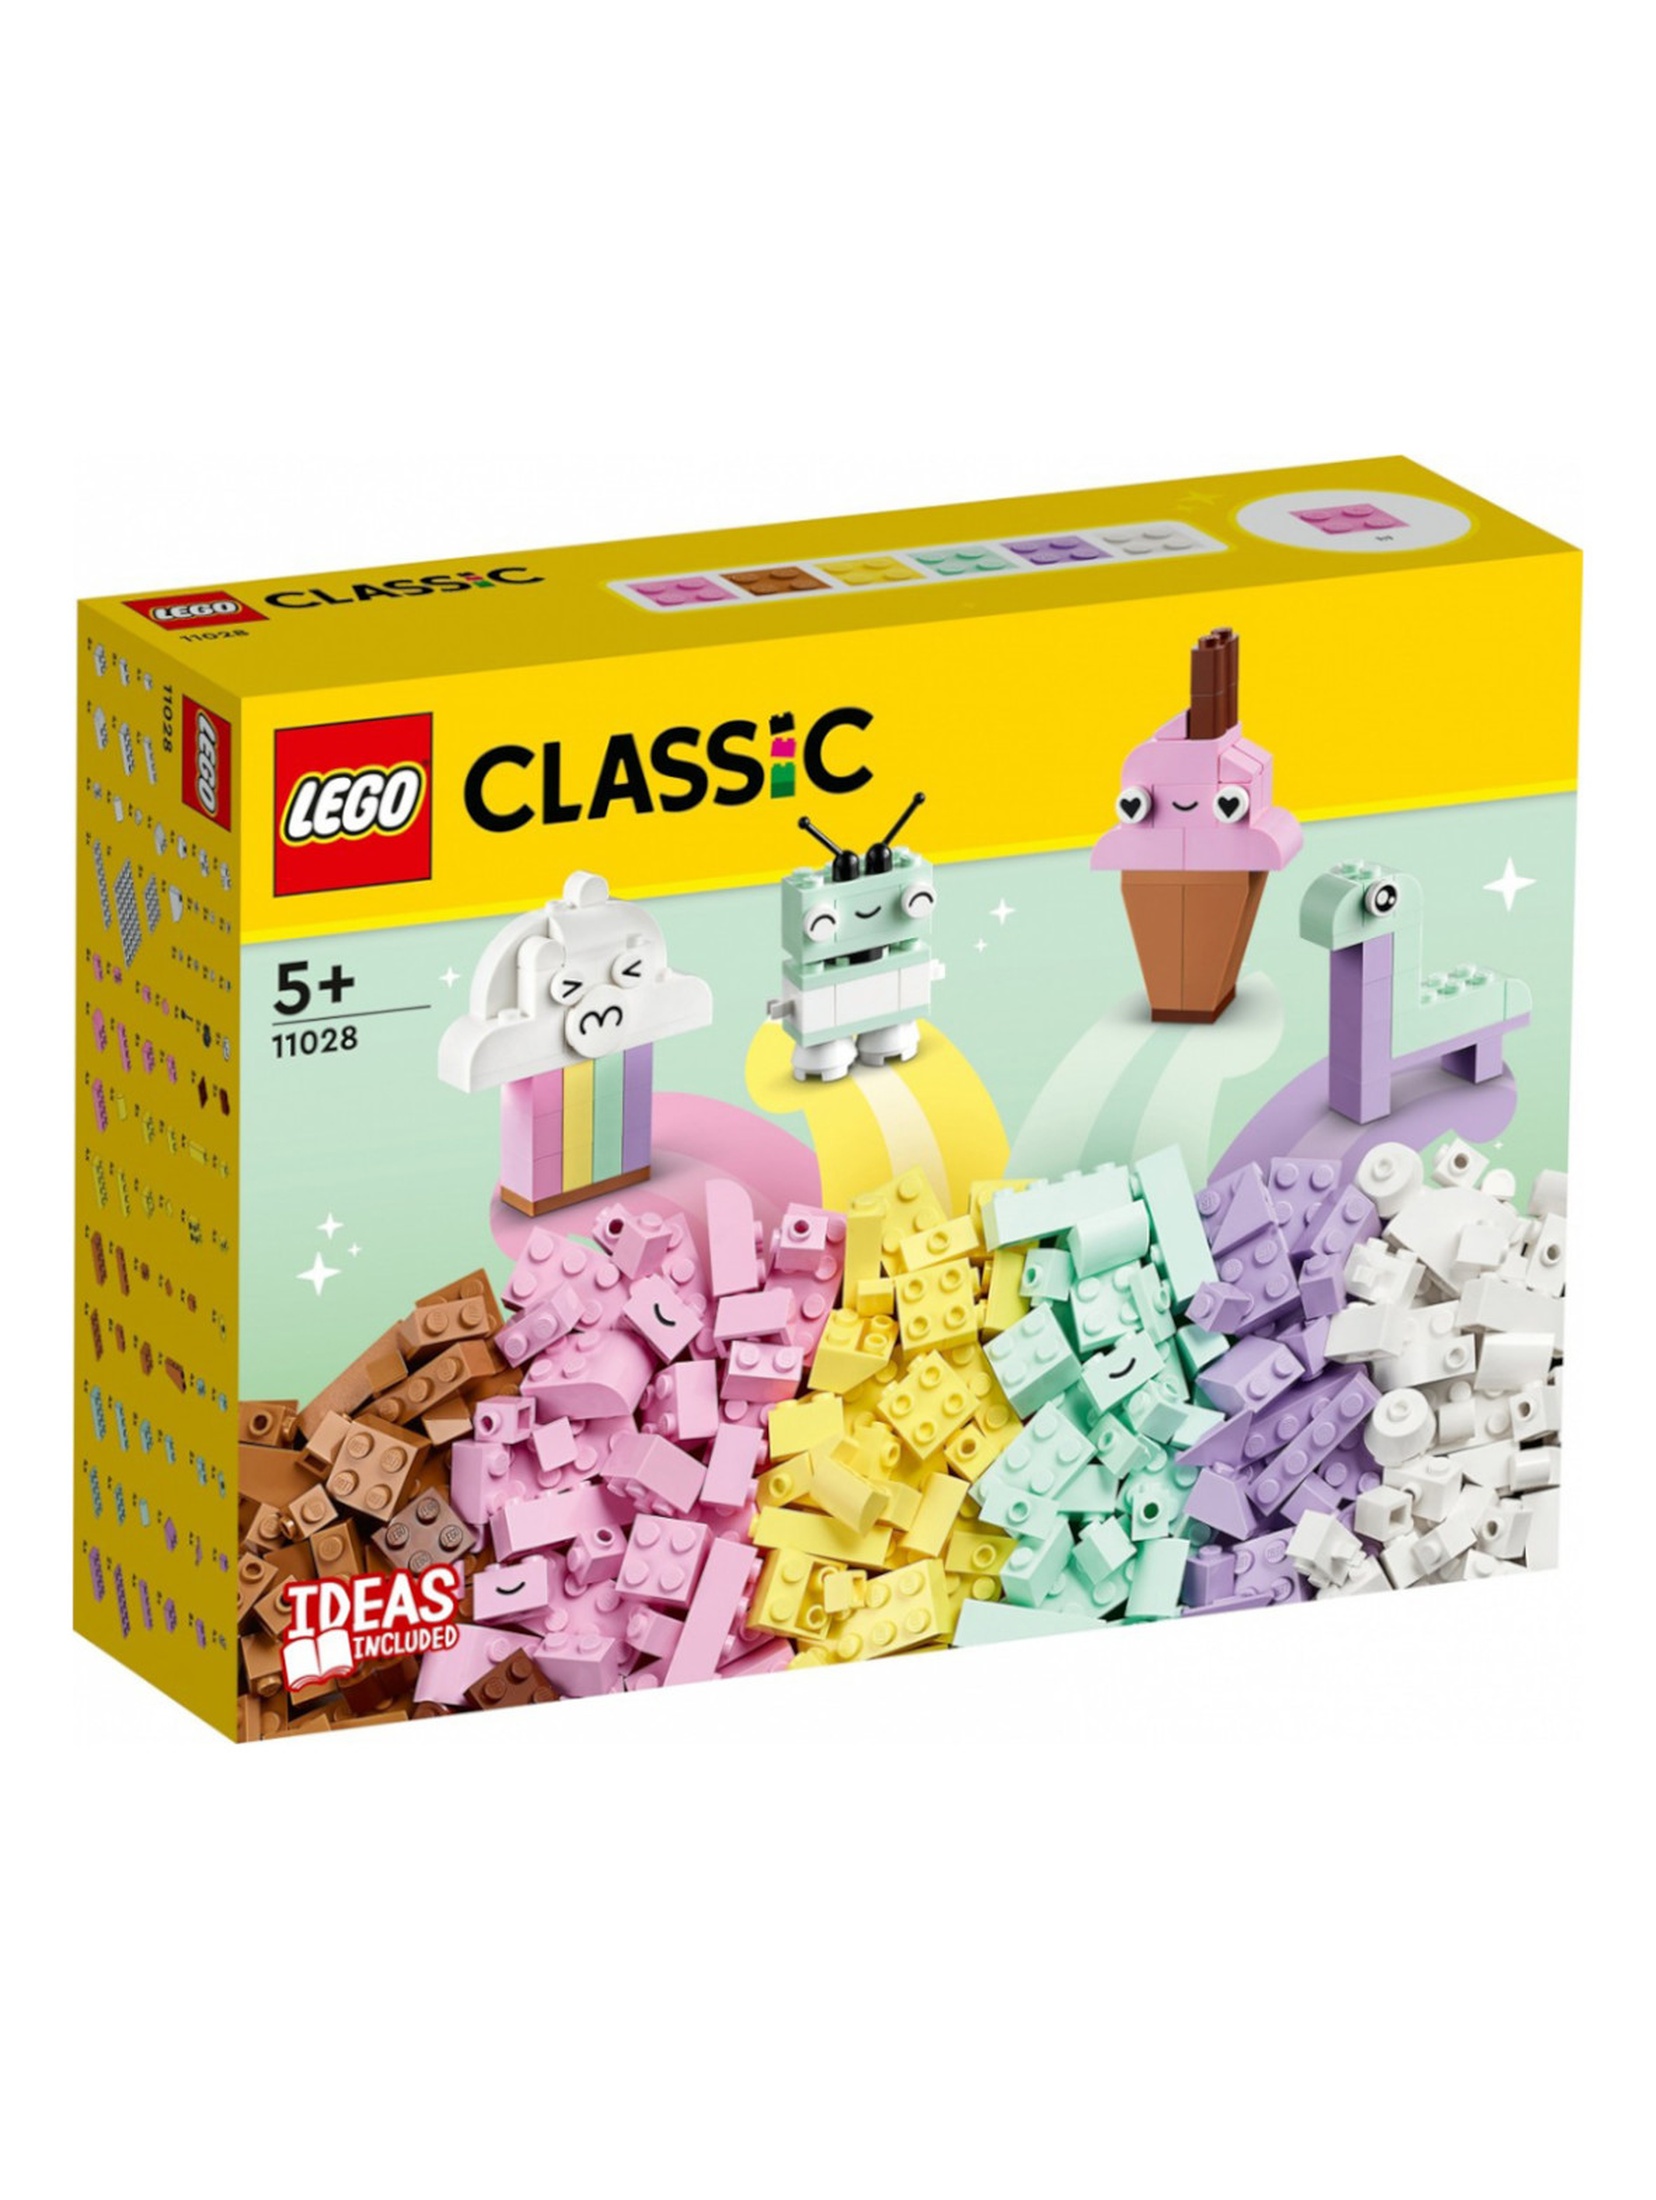 Klocki LEGO Classic 11028 Kreatywna zabawa pastelowymi - 333 elementy, wiek 5 +